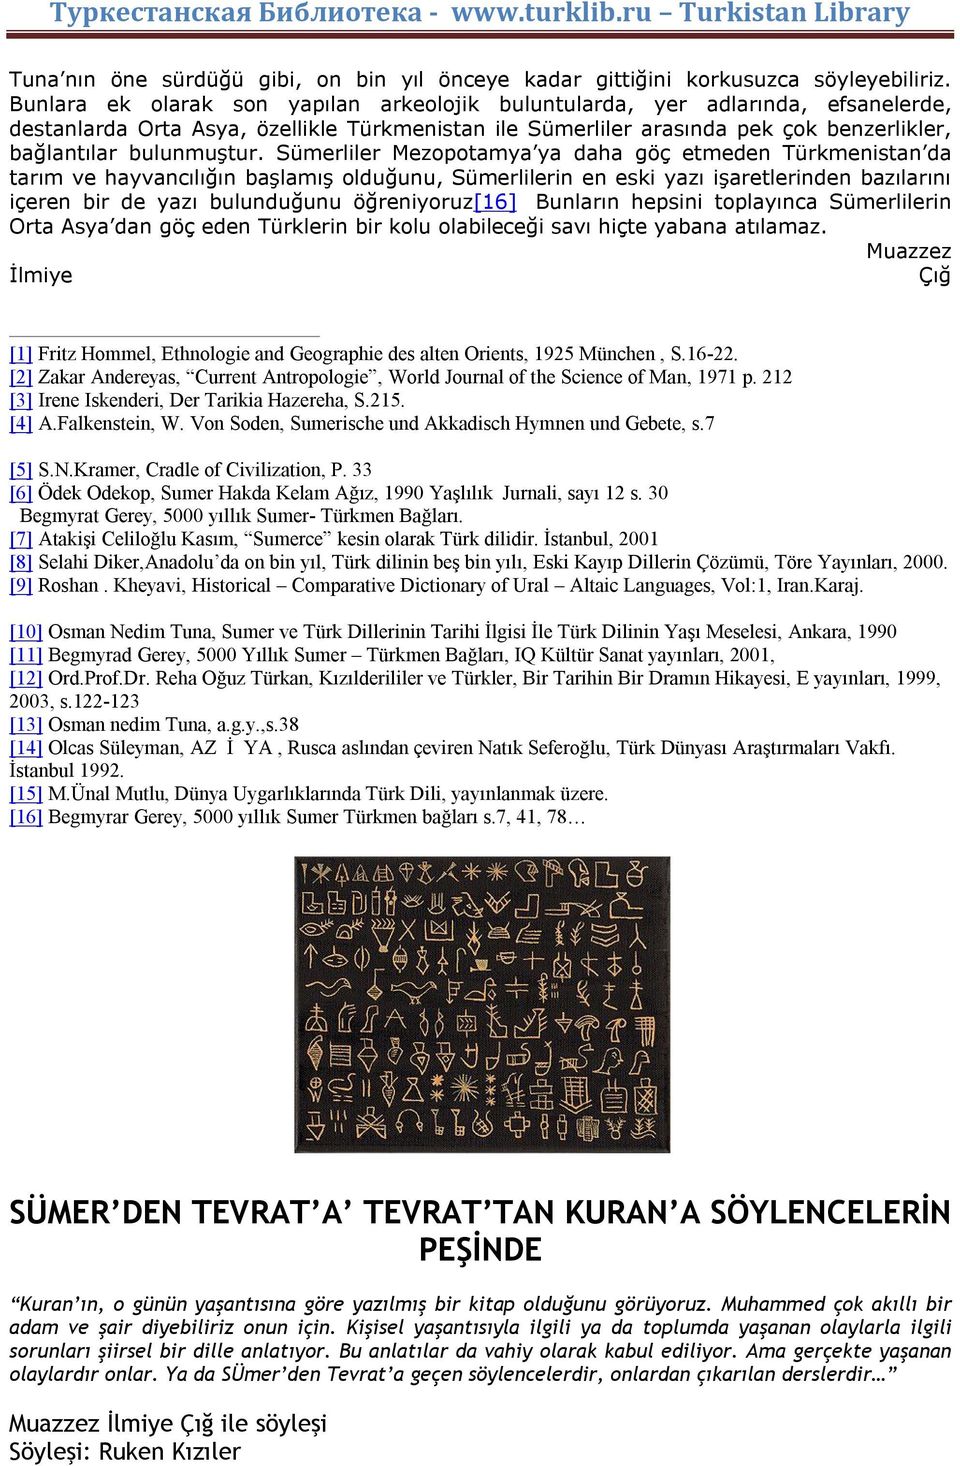 Sümerliler Mezopotamya ya daha göç etmeden Türkmenistan da tarım ve hayvancılığın başlamış olduğunu, Sümerlilerin en eski yazı işaretlerinden bazılarını içeren bir de yazı bulunduğunu öğreniyoruz[16]